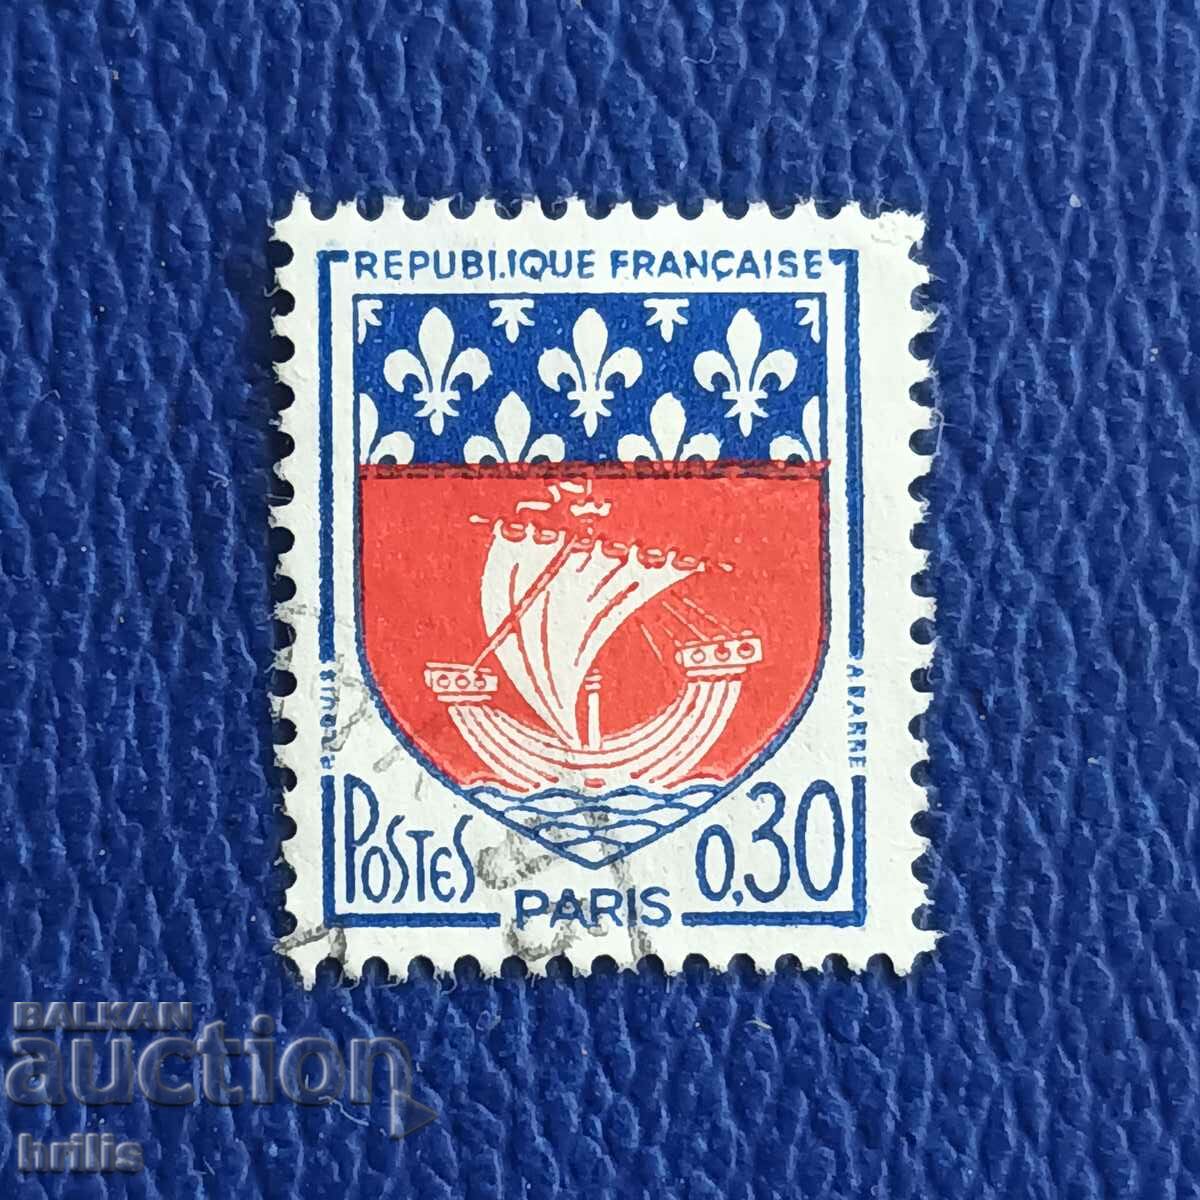 ФРАНЦИЯ 1960-ТЕ - ПАРИЖ